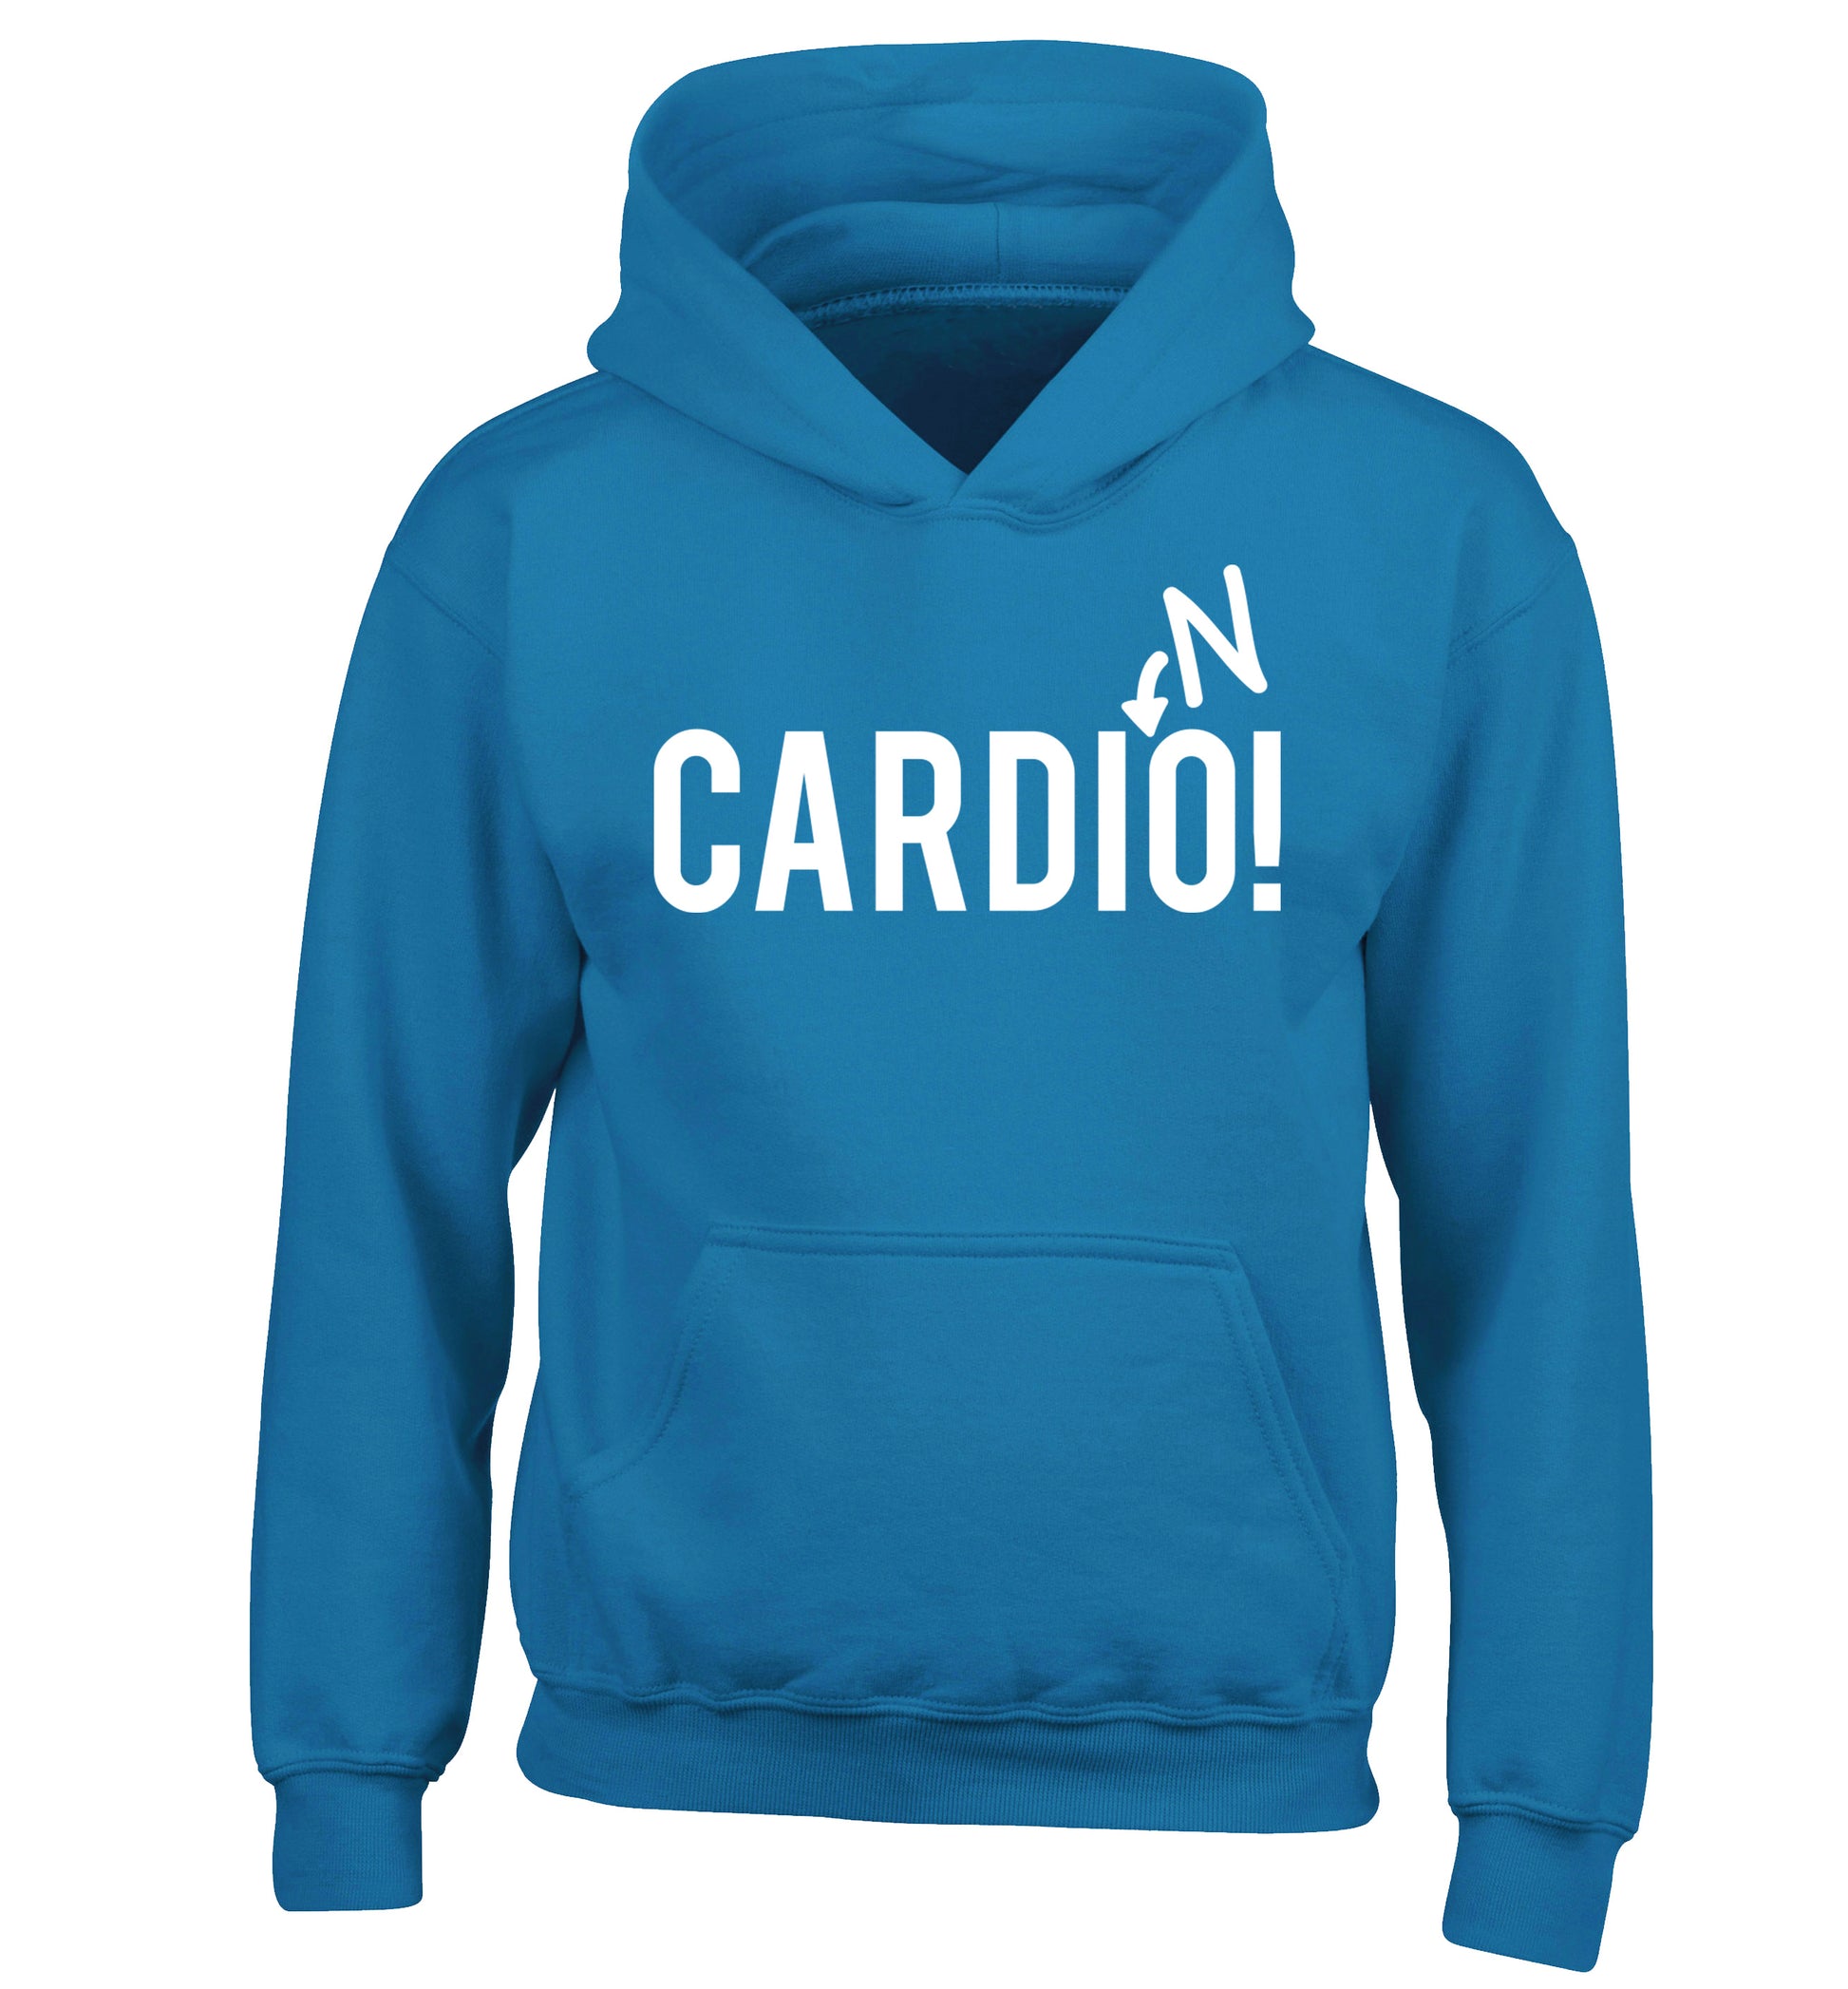 Cardino children's blue hoodie 12-14 Years